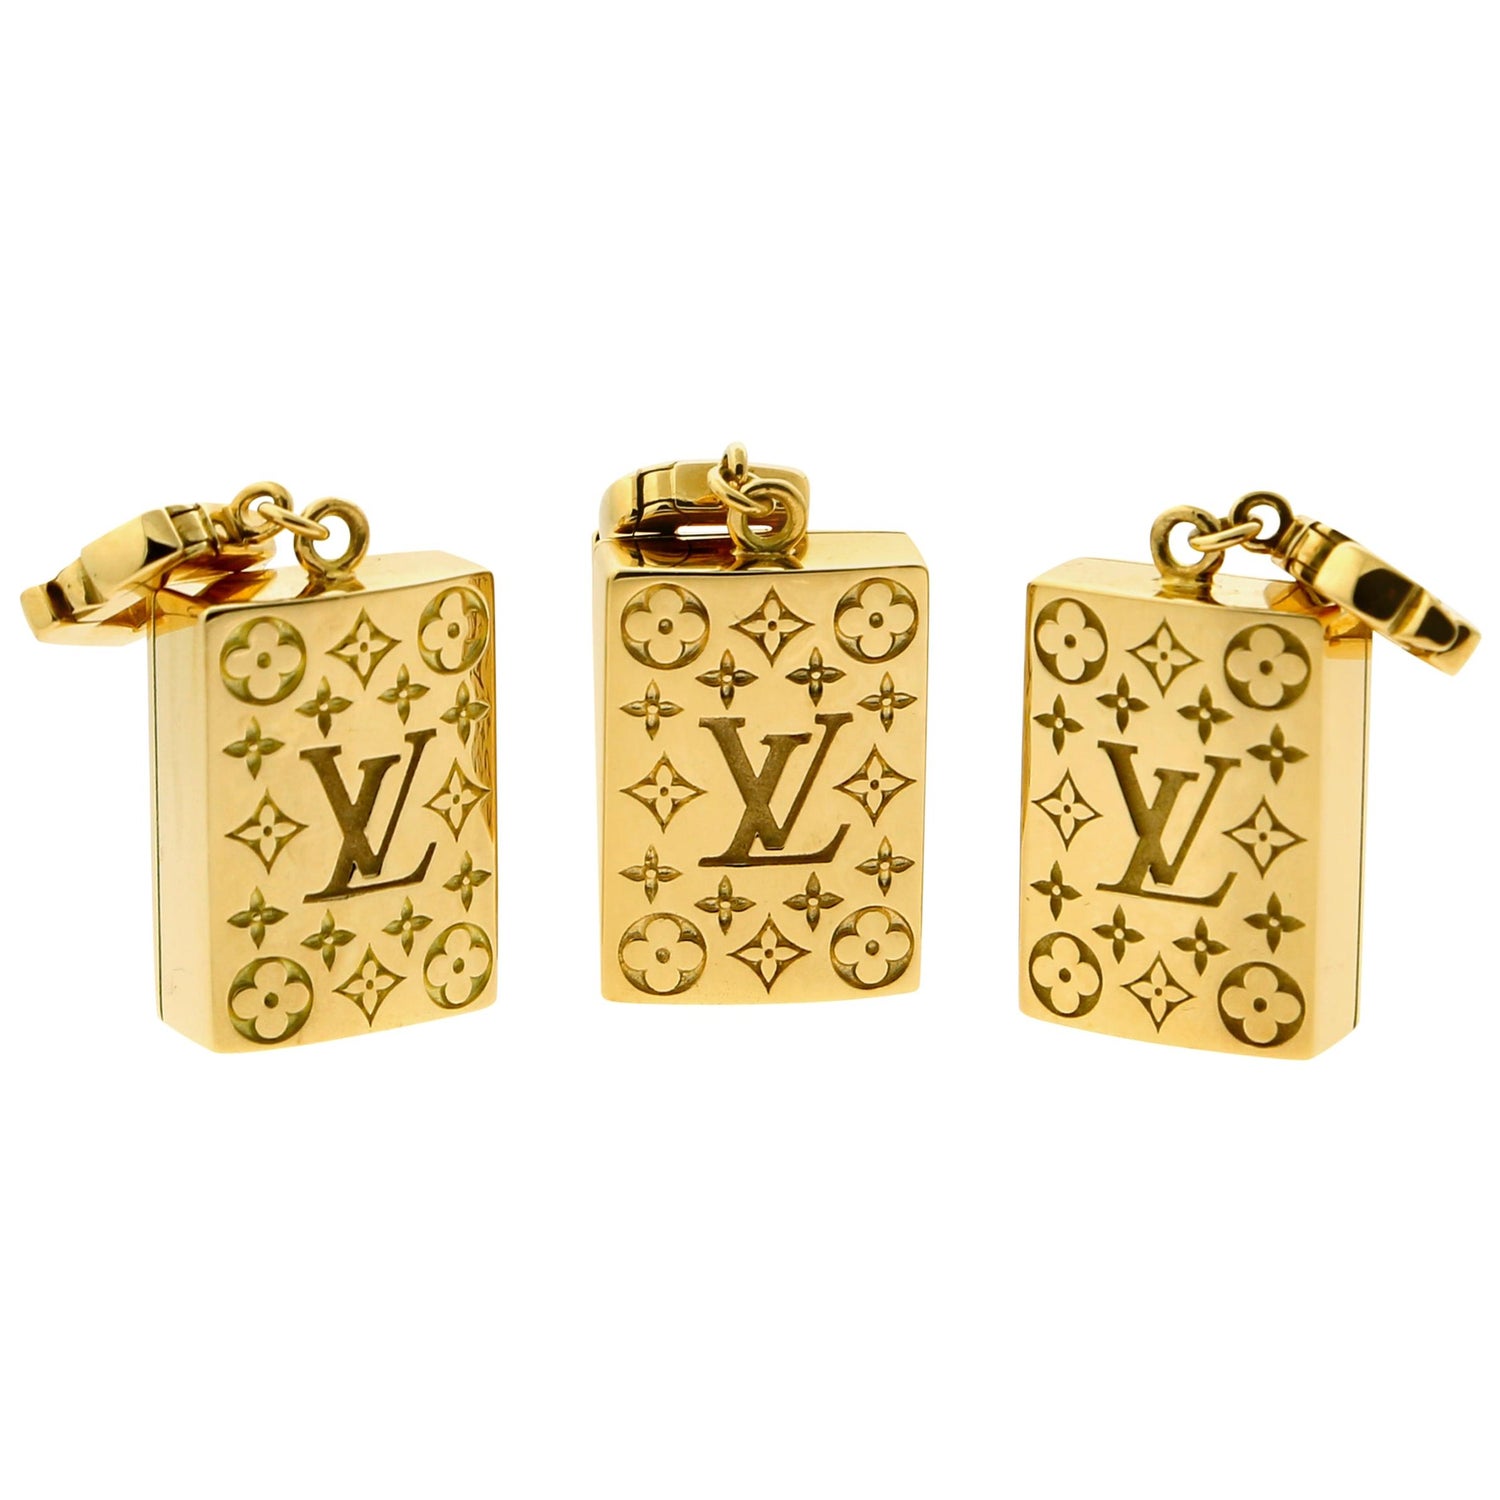 LV Iconic Enamel Earrings - Luxury S00 Black